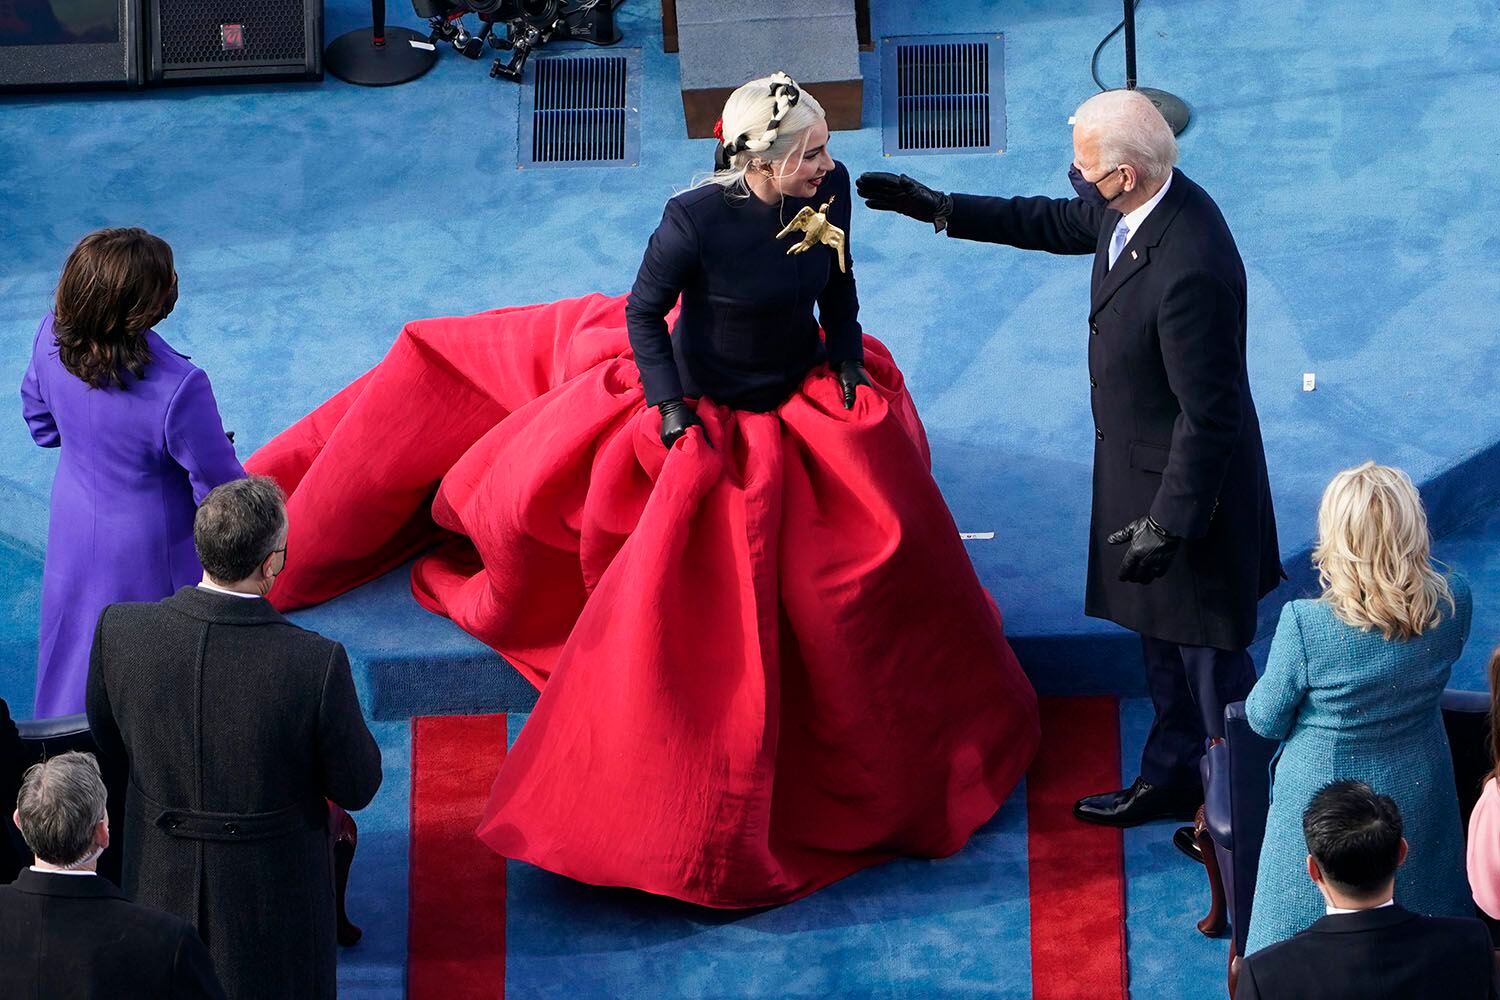 El presidente electo Joe Biden saluda a Lady Gaga durante la 59a ceremonia de investidura presidencial en el Capitolio en Washington, el miércoles 20 de enero de 2021. (Foto AP/Susan Walsh, Pool)